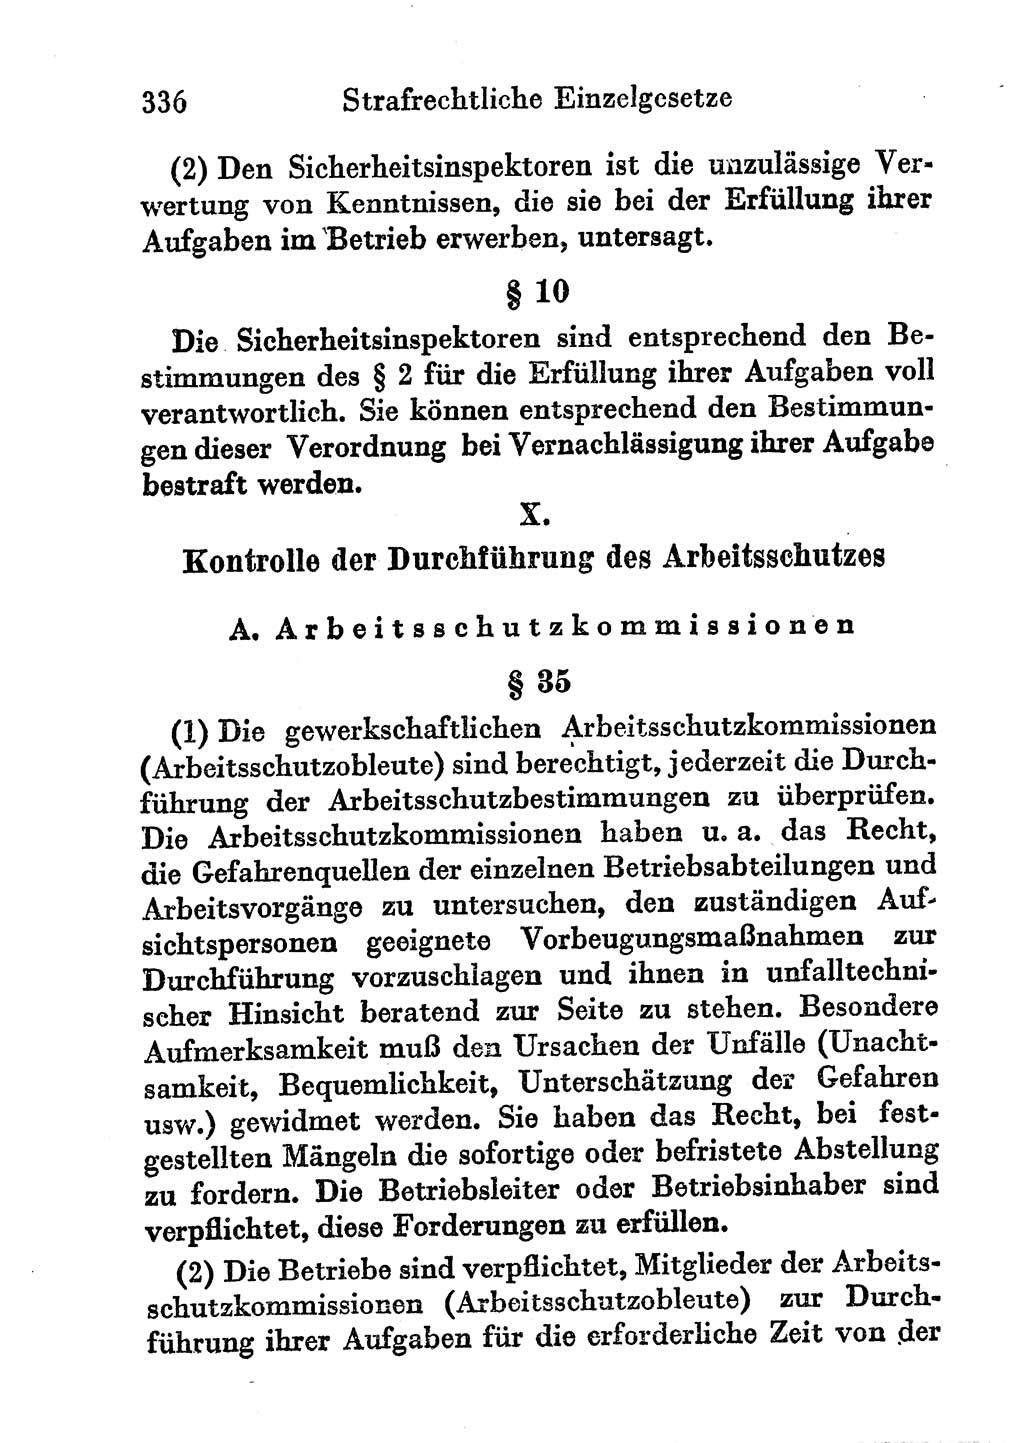 Strafgesetzbuch (StGB) und andere Strafgesetze [Deutsche Demokratische Republik (DDR)] 1956, Seite 336 (StGB Strafges. DDR 1956, S. 336)